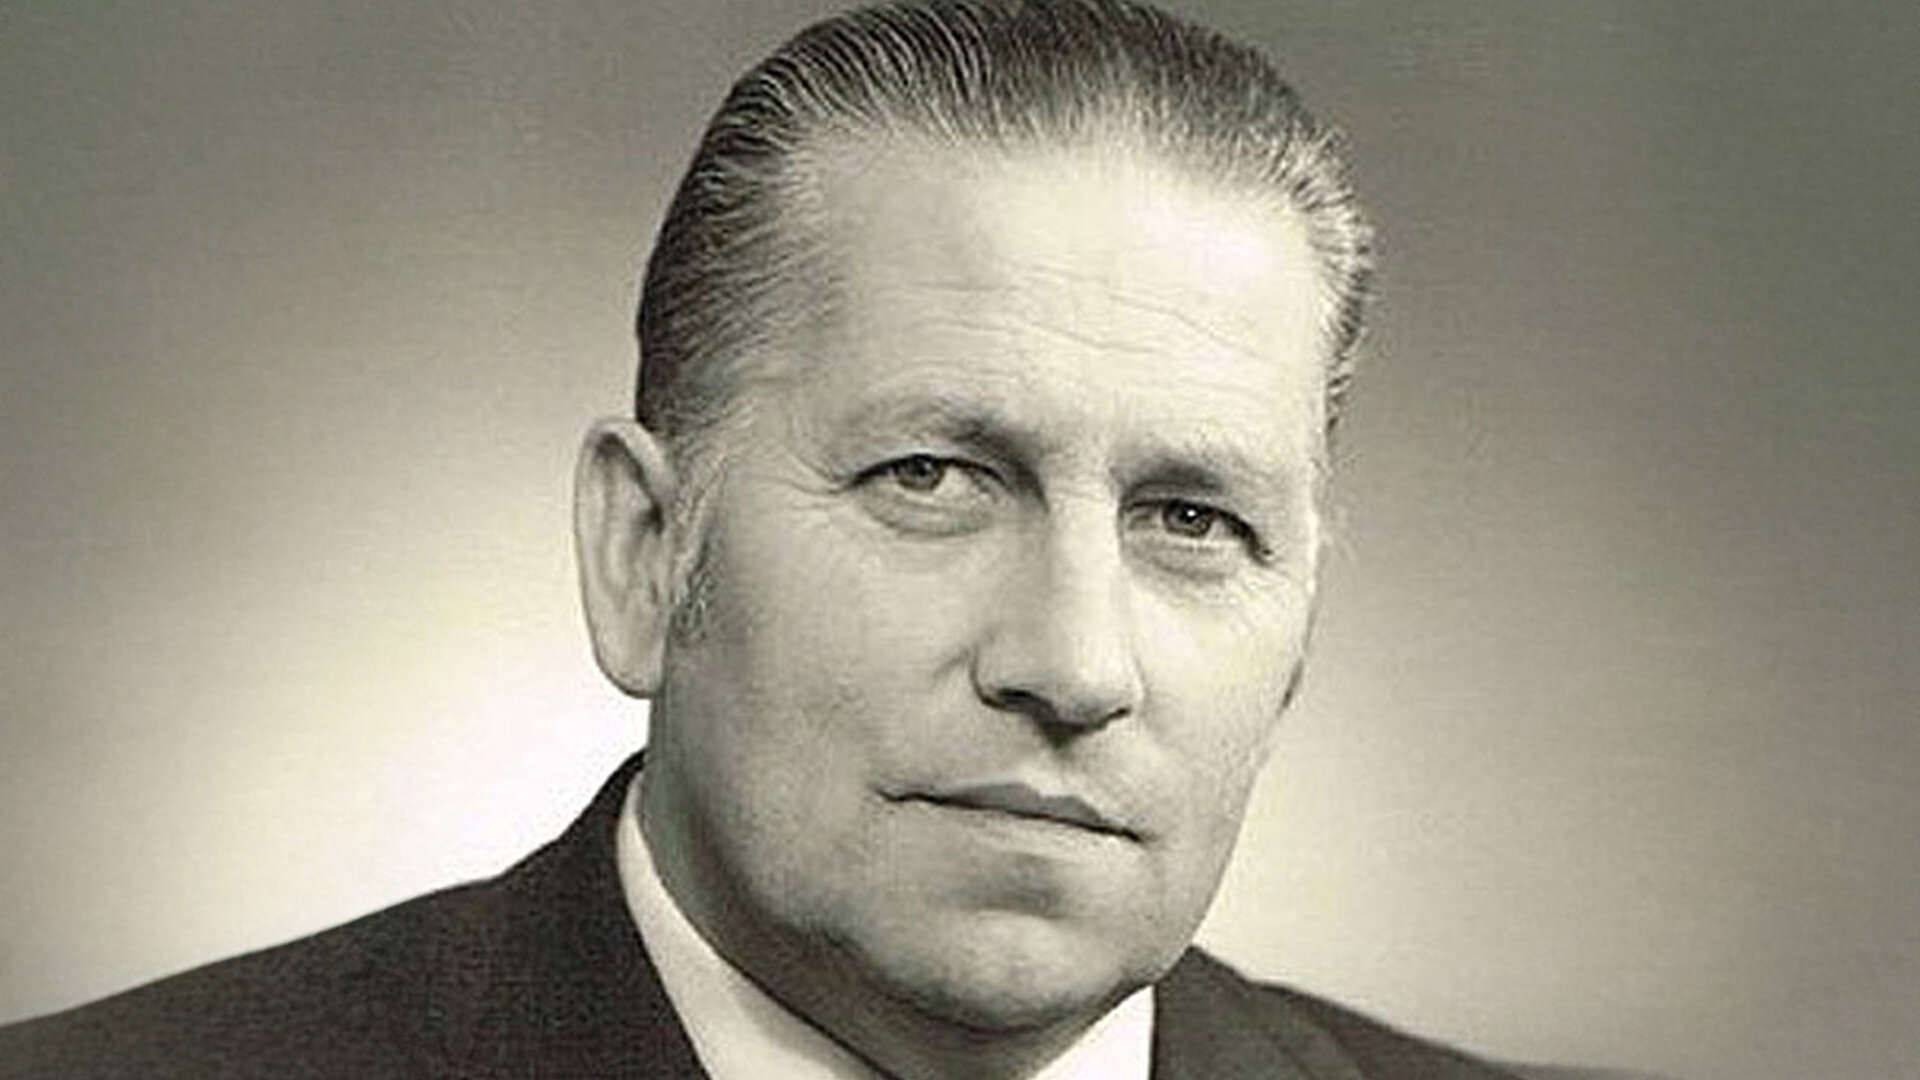 Porträt von Gotthold Schaffner, dem Gründer von Schaffner GF AG, aus dem Jahr 1955, in schwarz-weiß Fotografie.